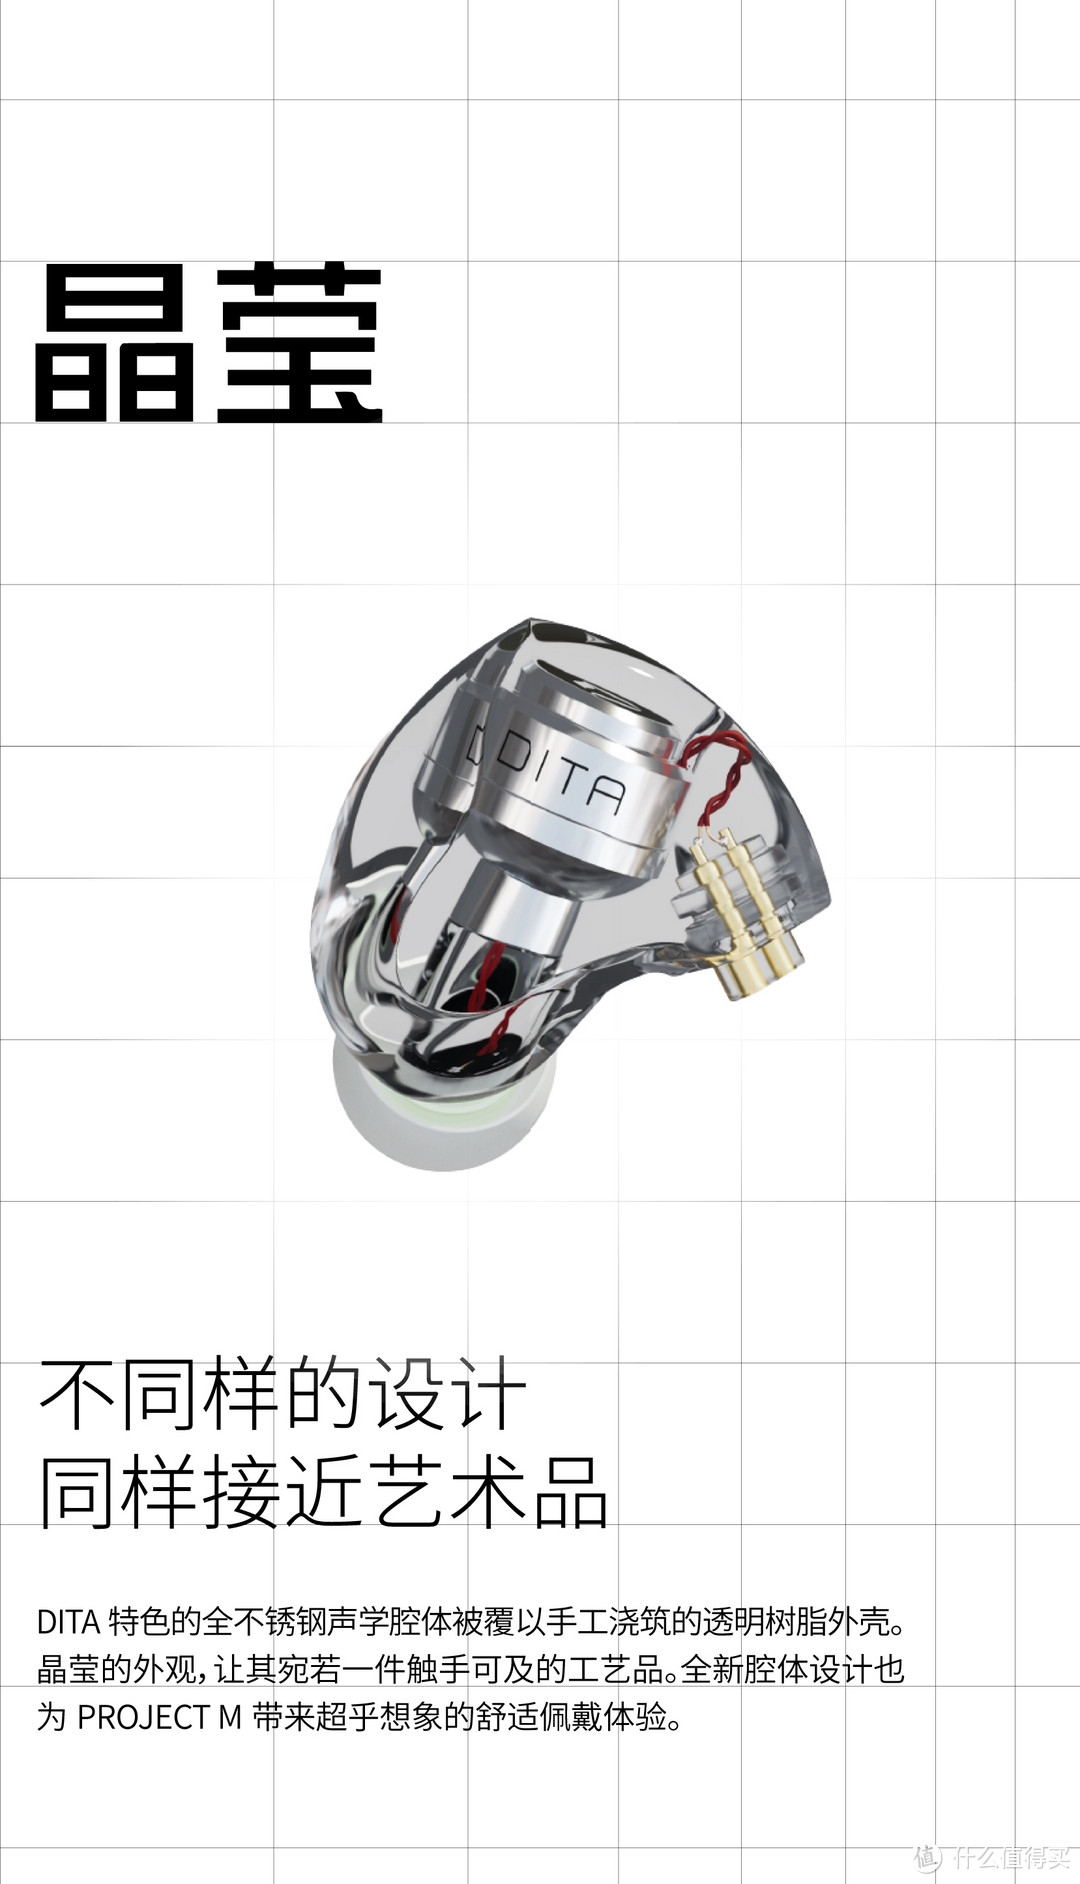 【行业资讯】DITA新品耳机PROJECT M正式上市